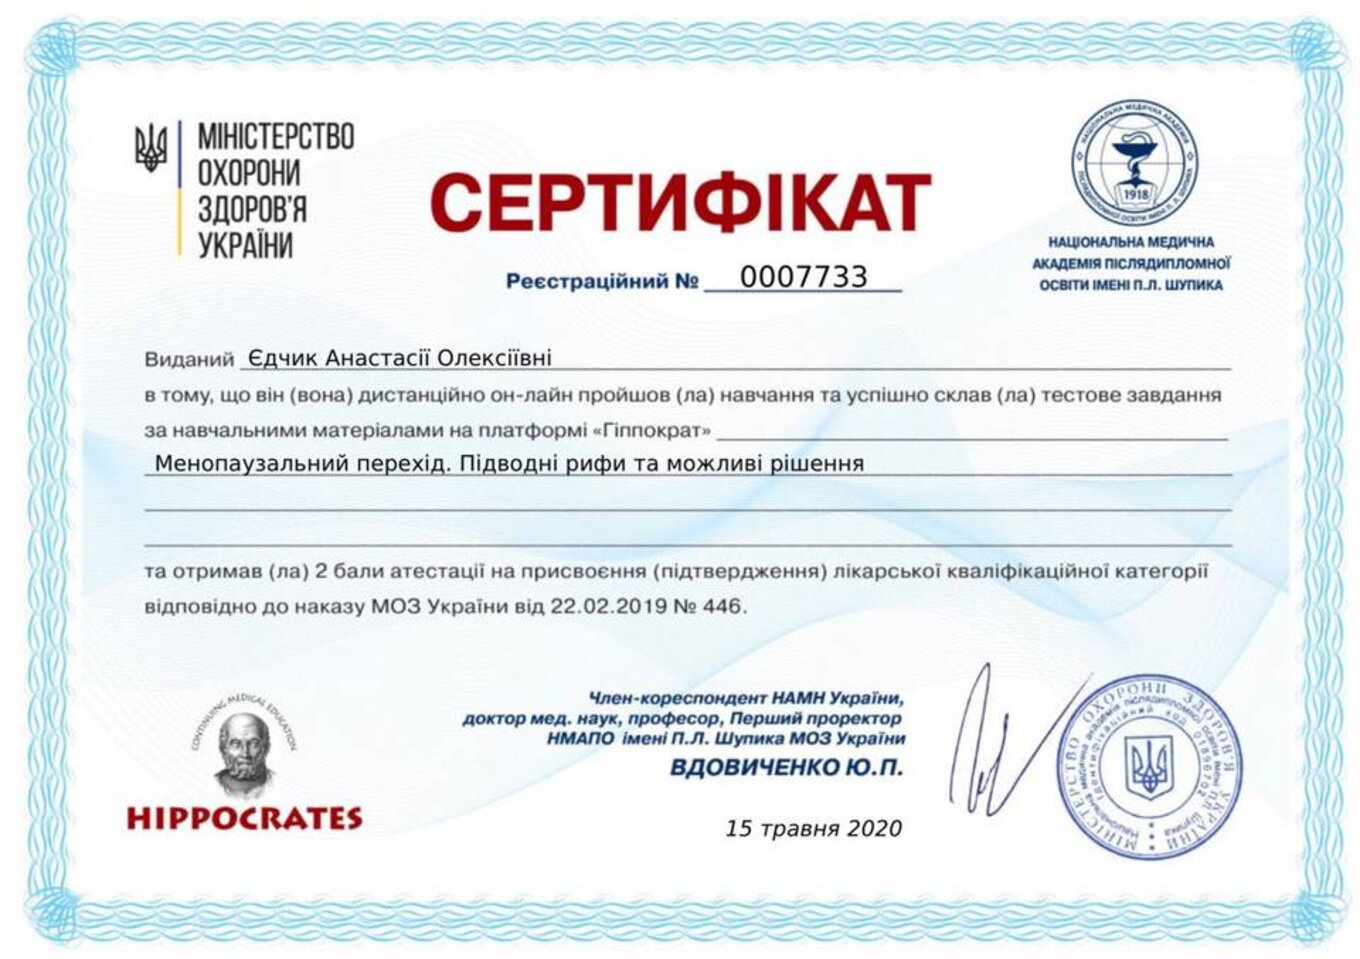 certificates/yedchik-anastasiya-oleksiyivna/erc-edchik-cert-13.jpg